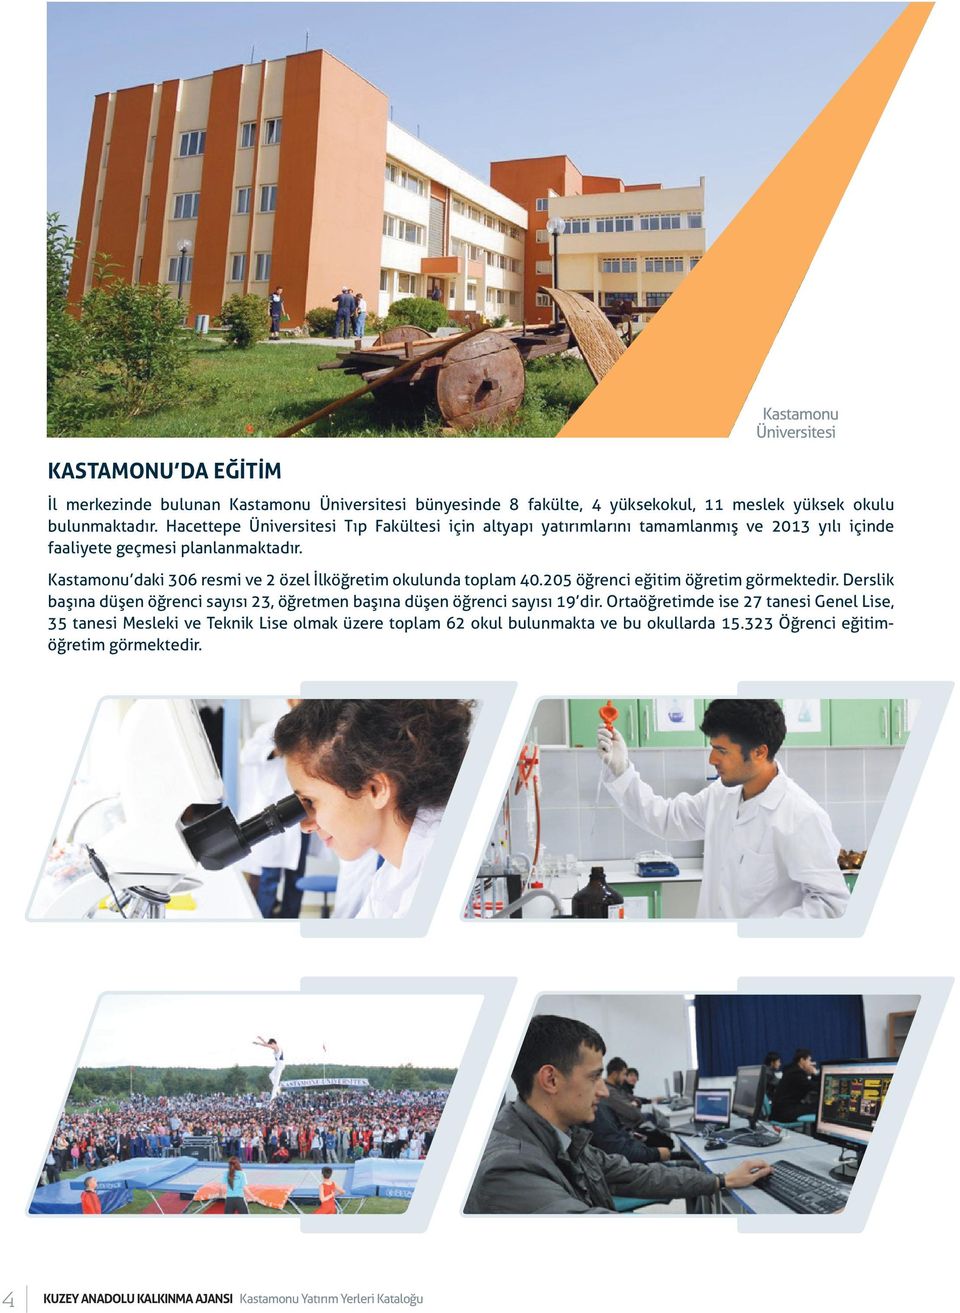 Kastamonu daki 306 resmi ve 2 özel İlköğretim okulunda toplam 40.205 öğrenci eğitim öğretim görmektedir.